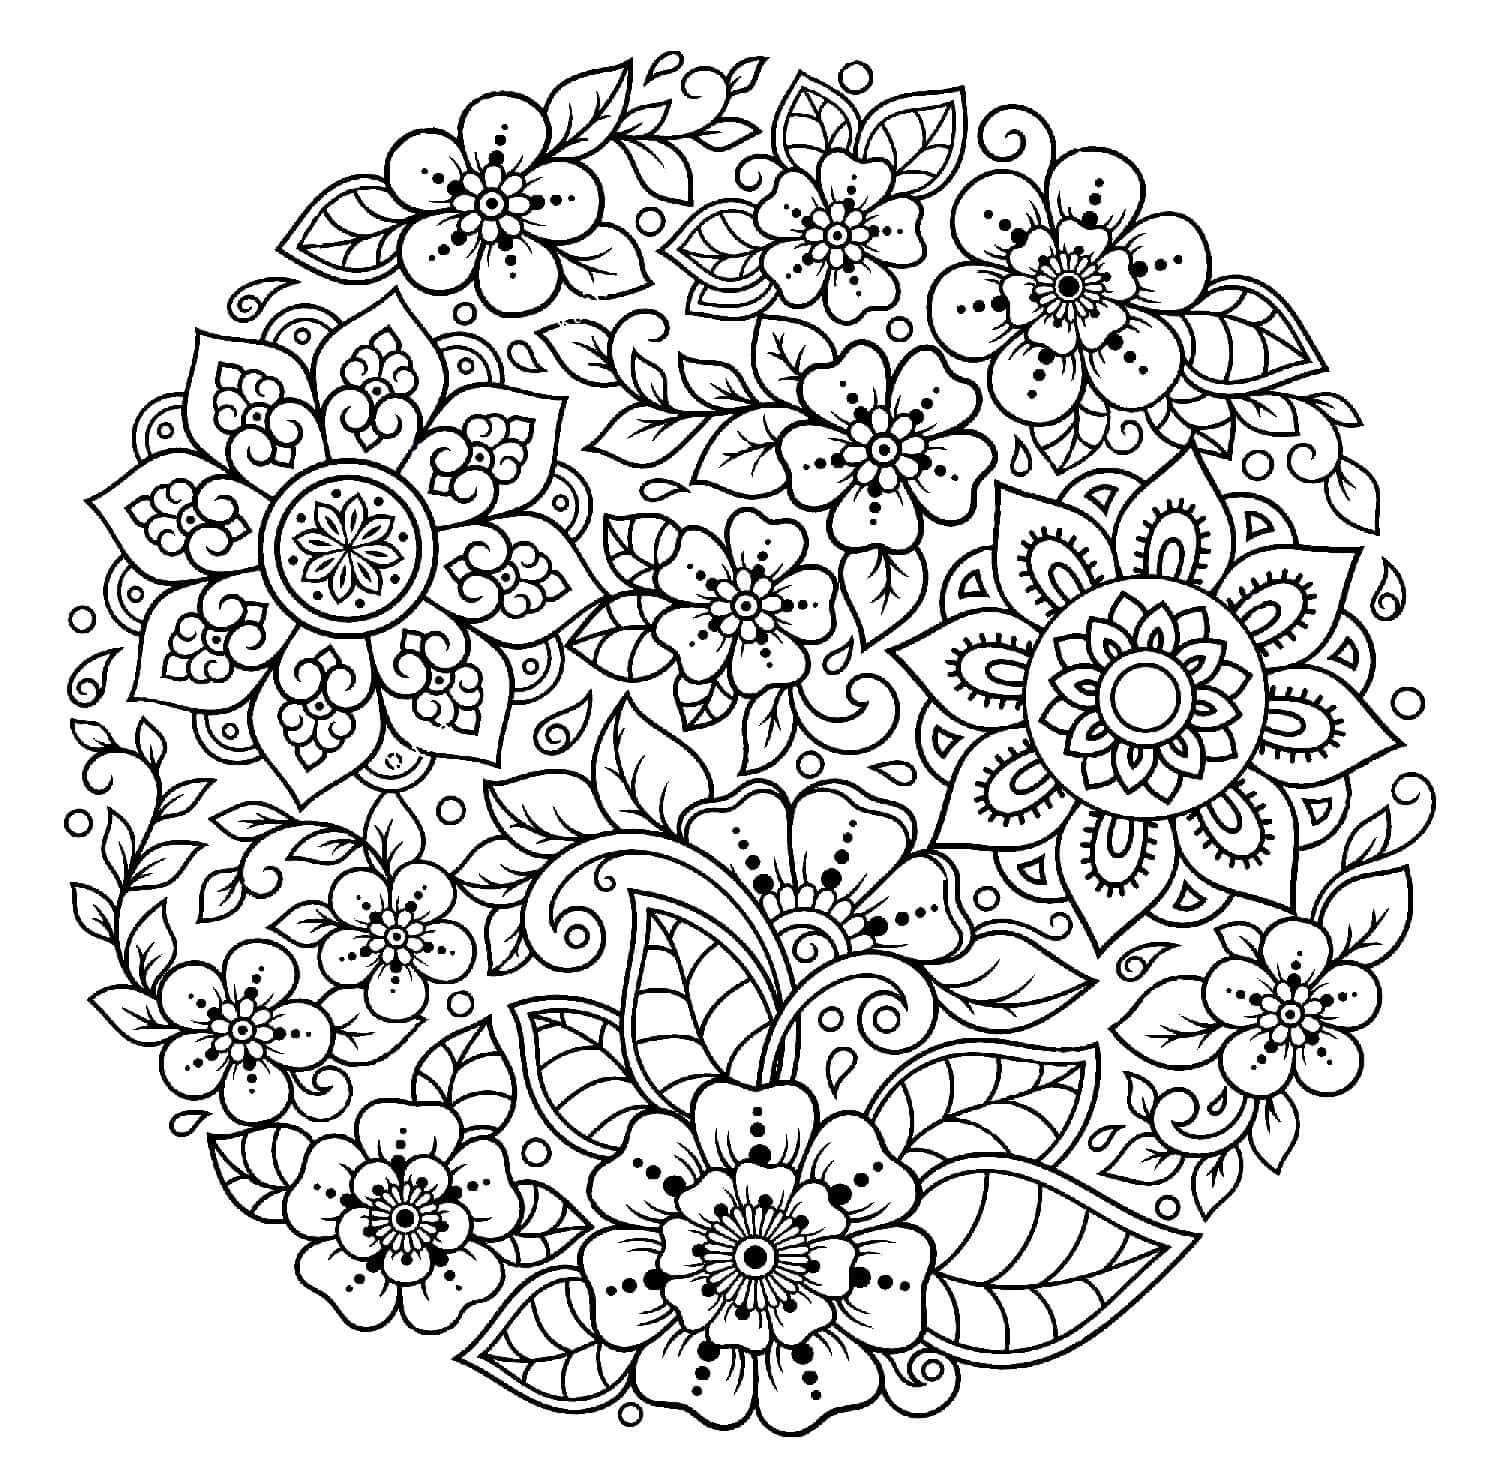 Mandala Flower Spring Coloring Page - Sheet 1 Mandalas